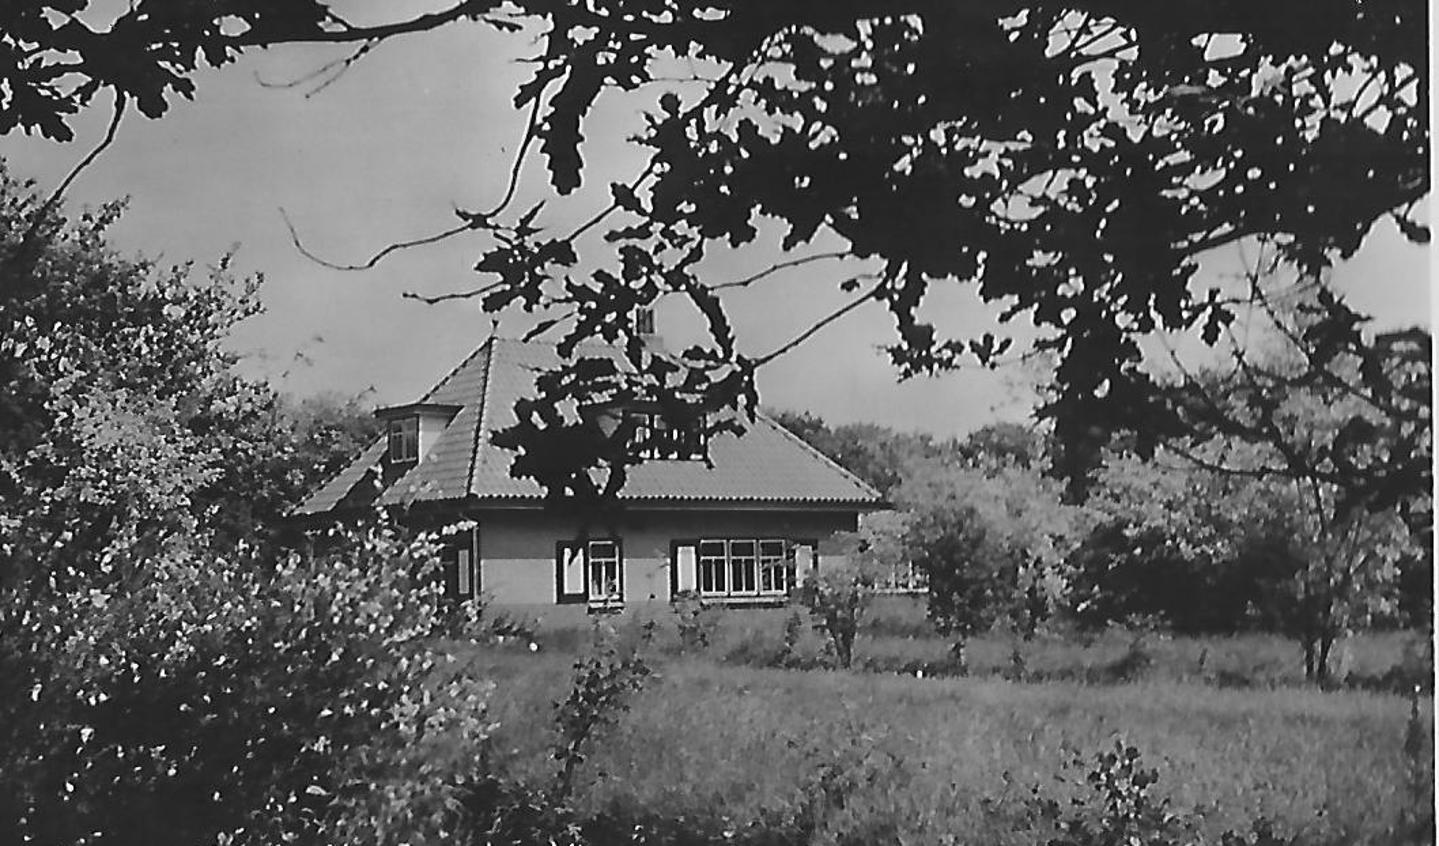 In 1938 kochten de schoonouders van Irma Hoogenraad uit Hollandsche Rading dit vakantiehuis in Renesse, op Schouwen Duiveland